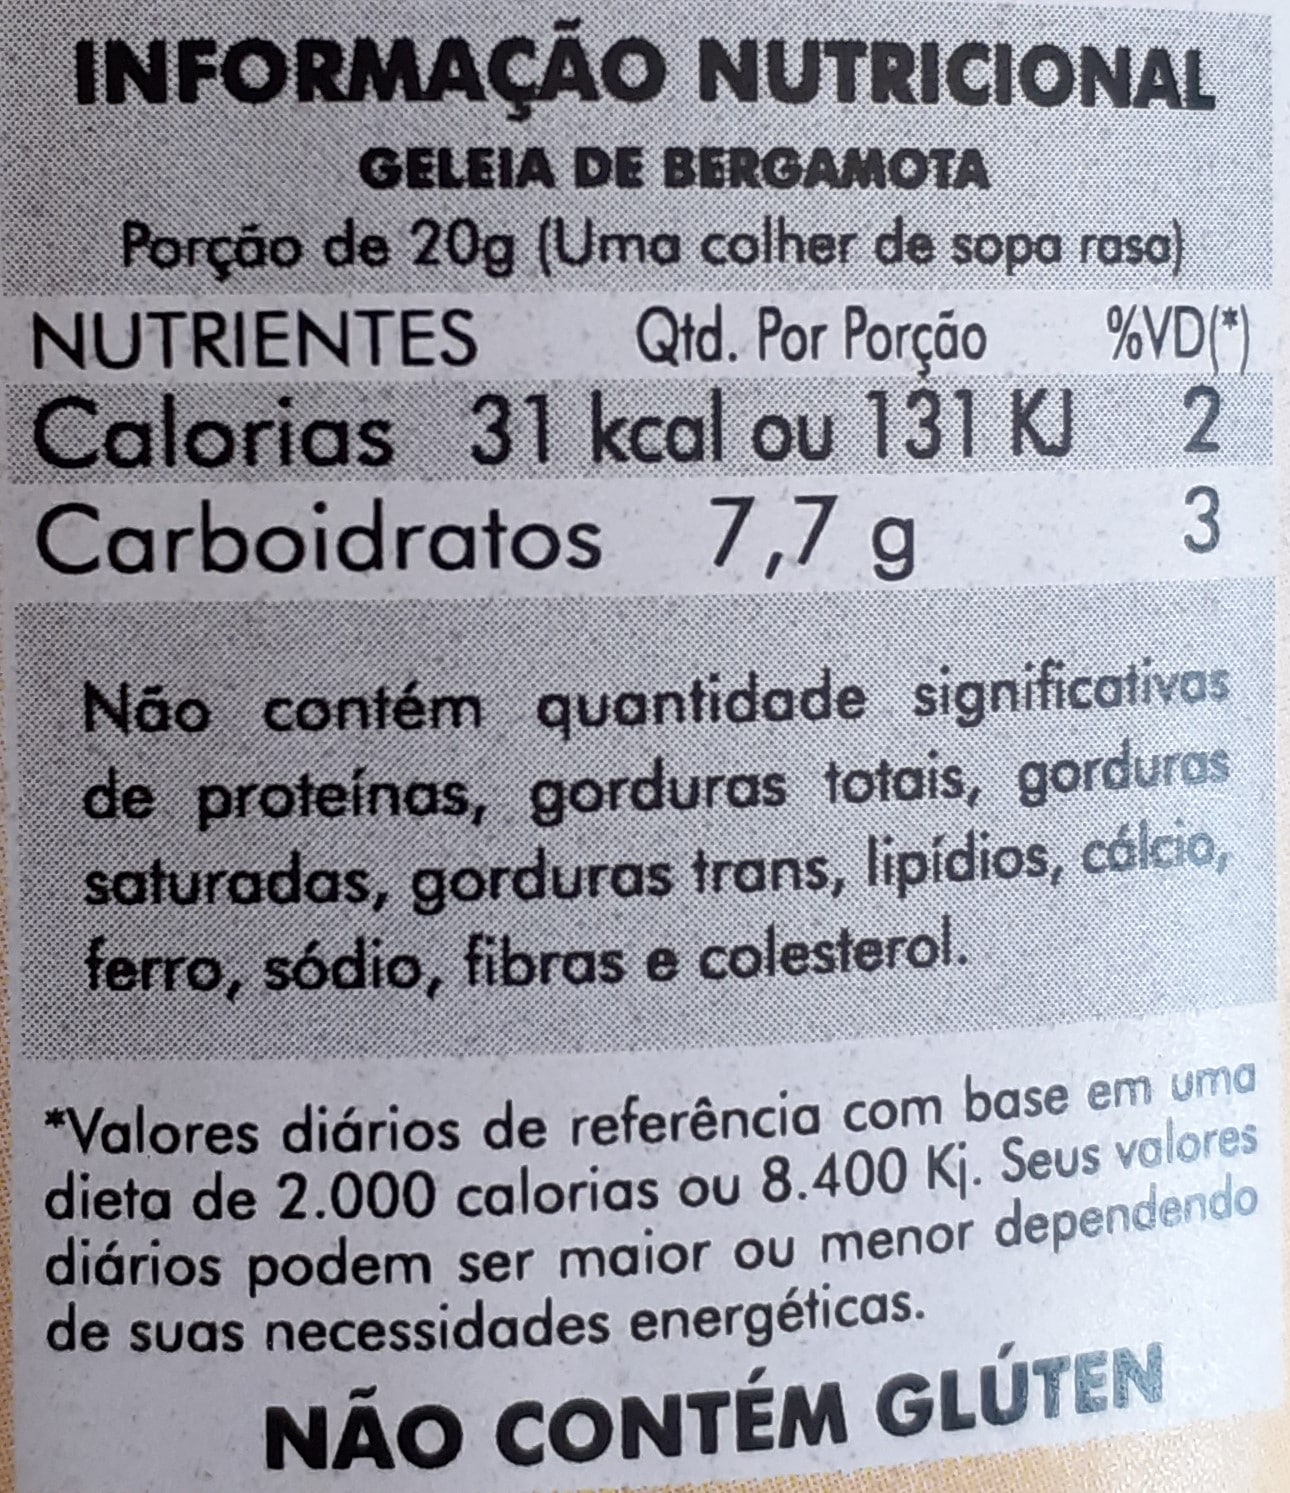 GELEIA DE BERGAMOTA  HF Carraro - Agroindústria de Produtos Orgânicos